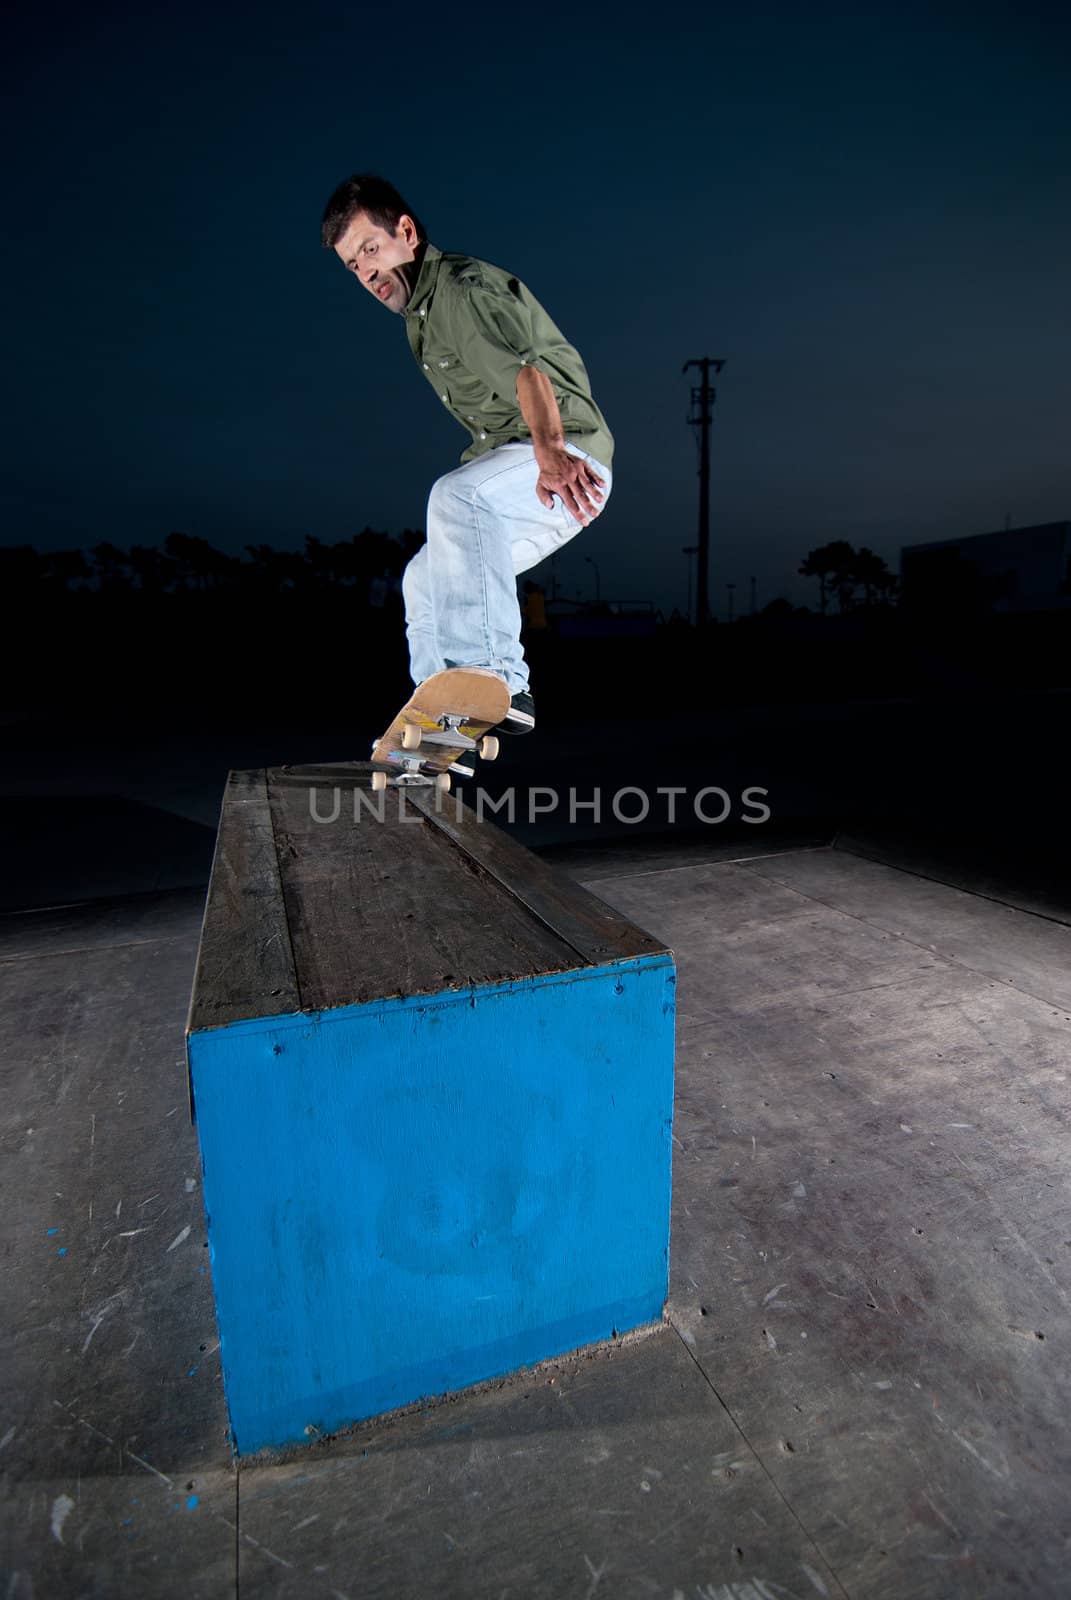 Skateboarder on a grind by homydesign